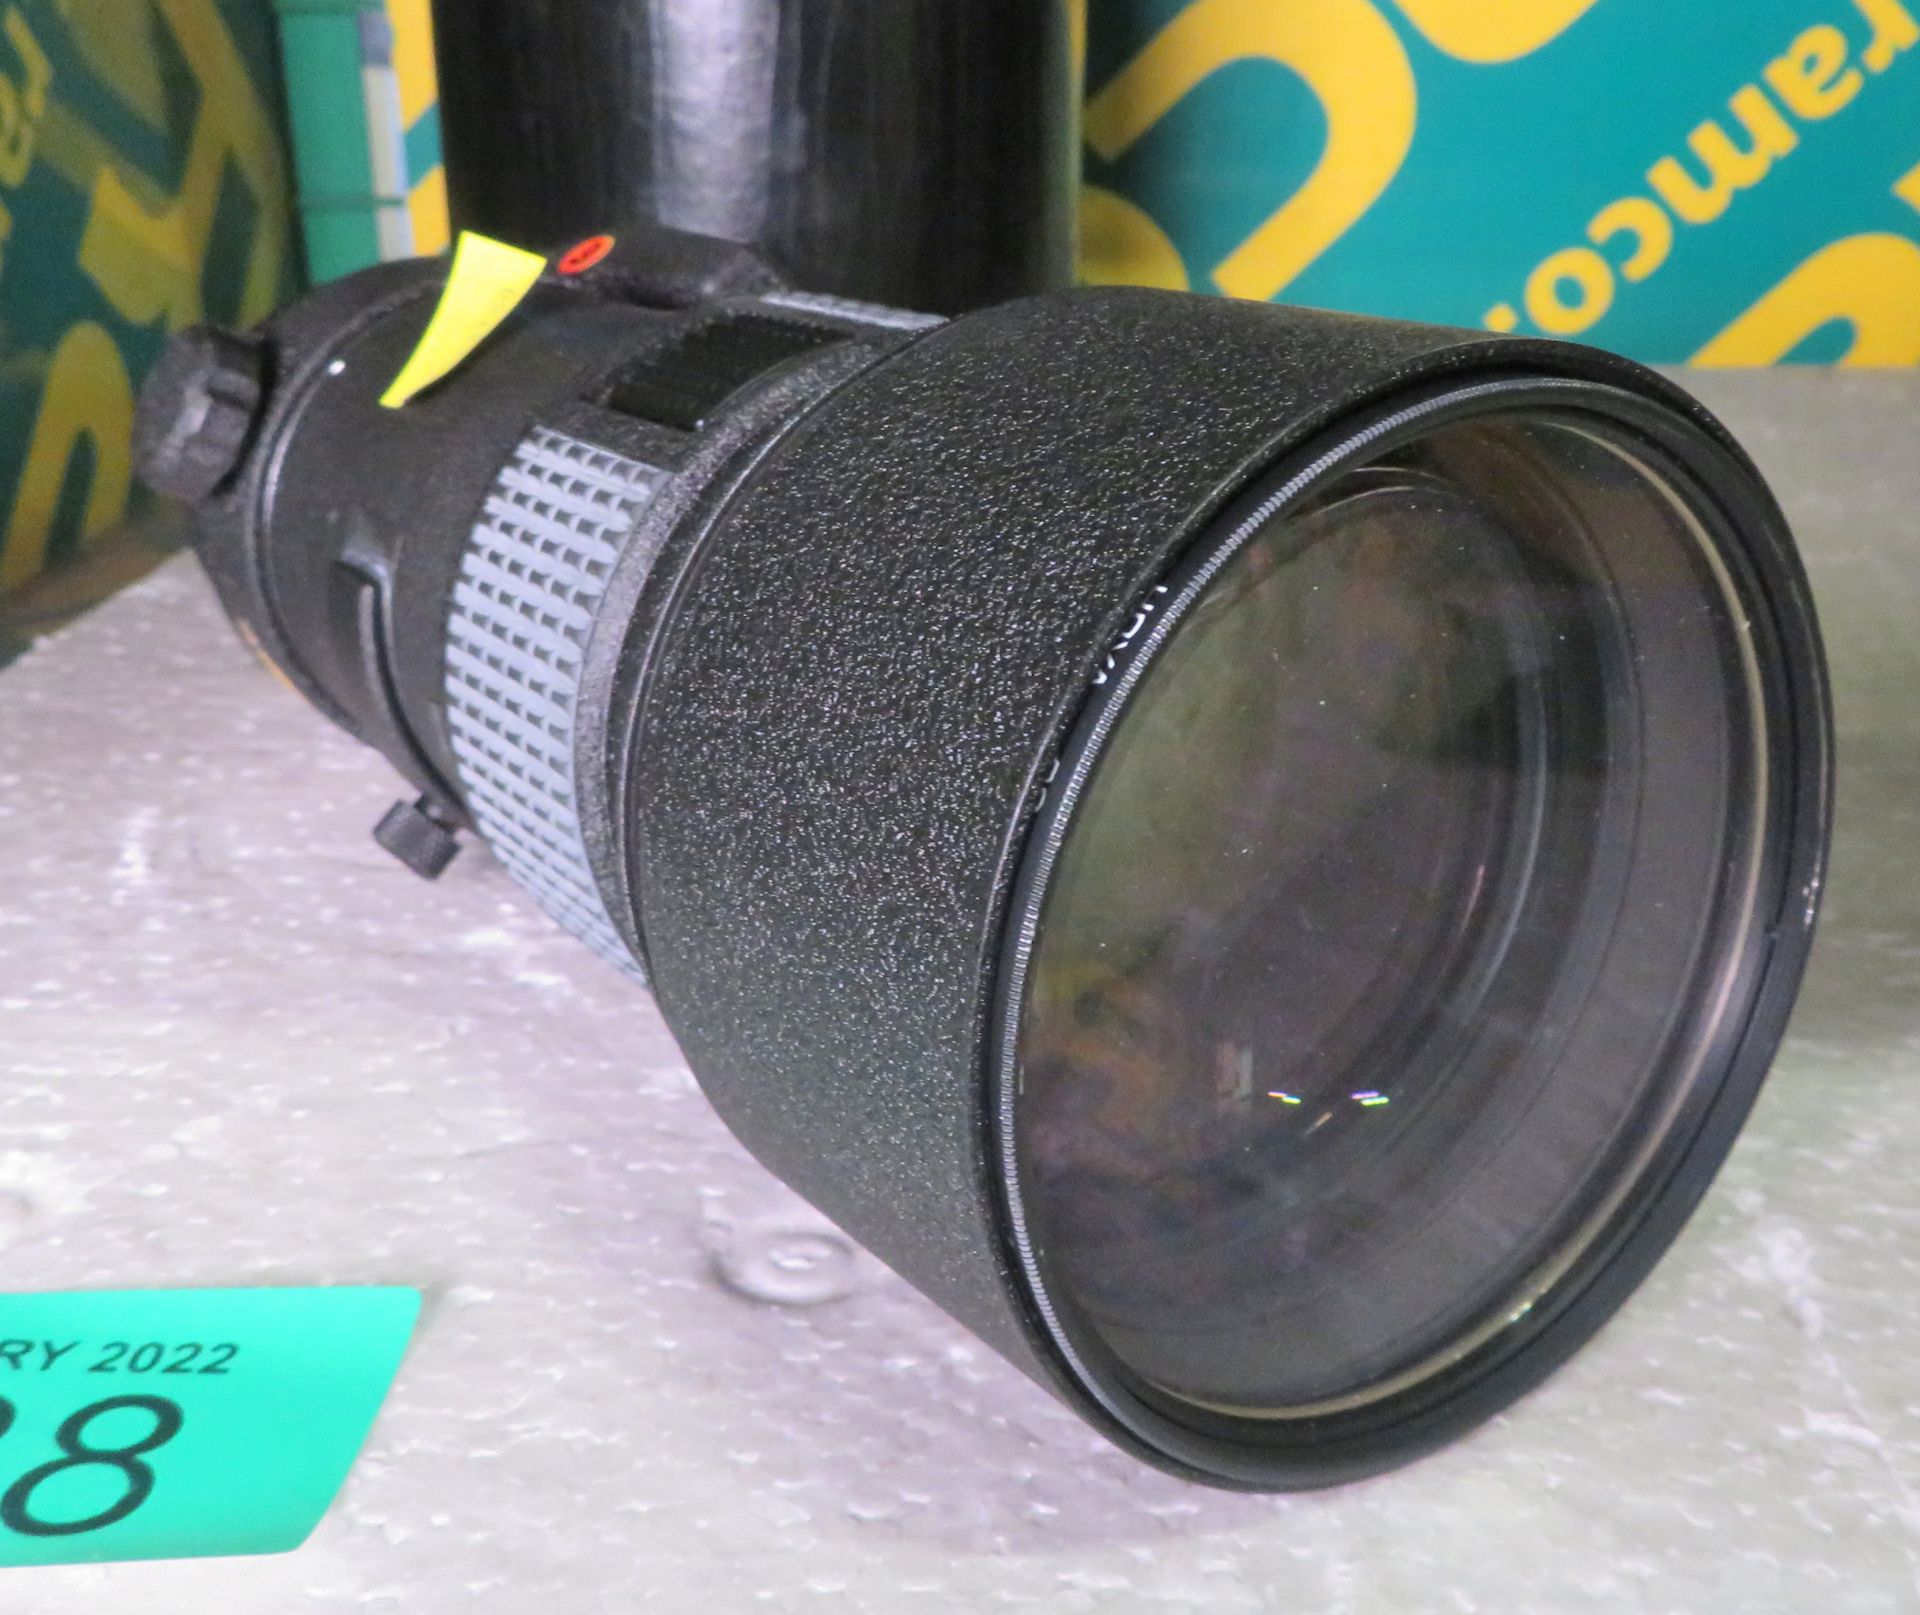 Nikon ED AF Nikkor 300mm 1:4 Lens - serial no. 201623 & Nikon CL-42 Case - Image 3 of 5